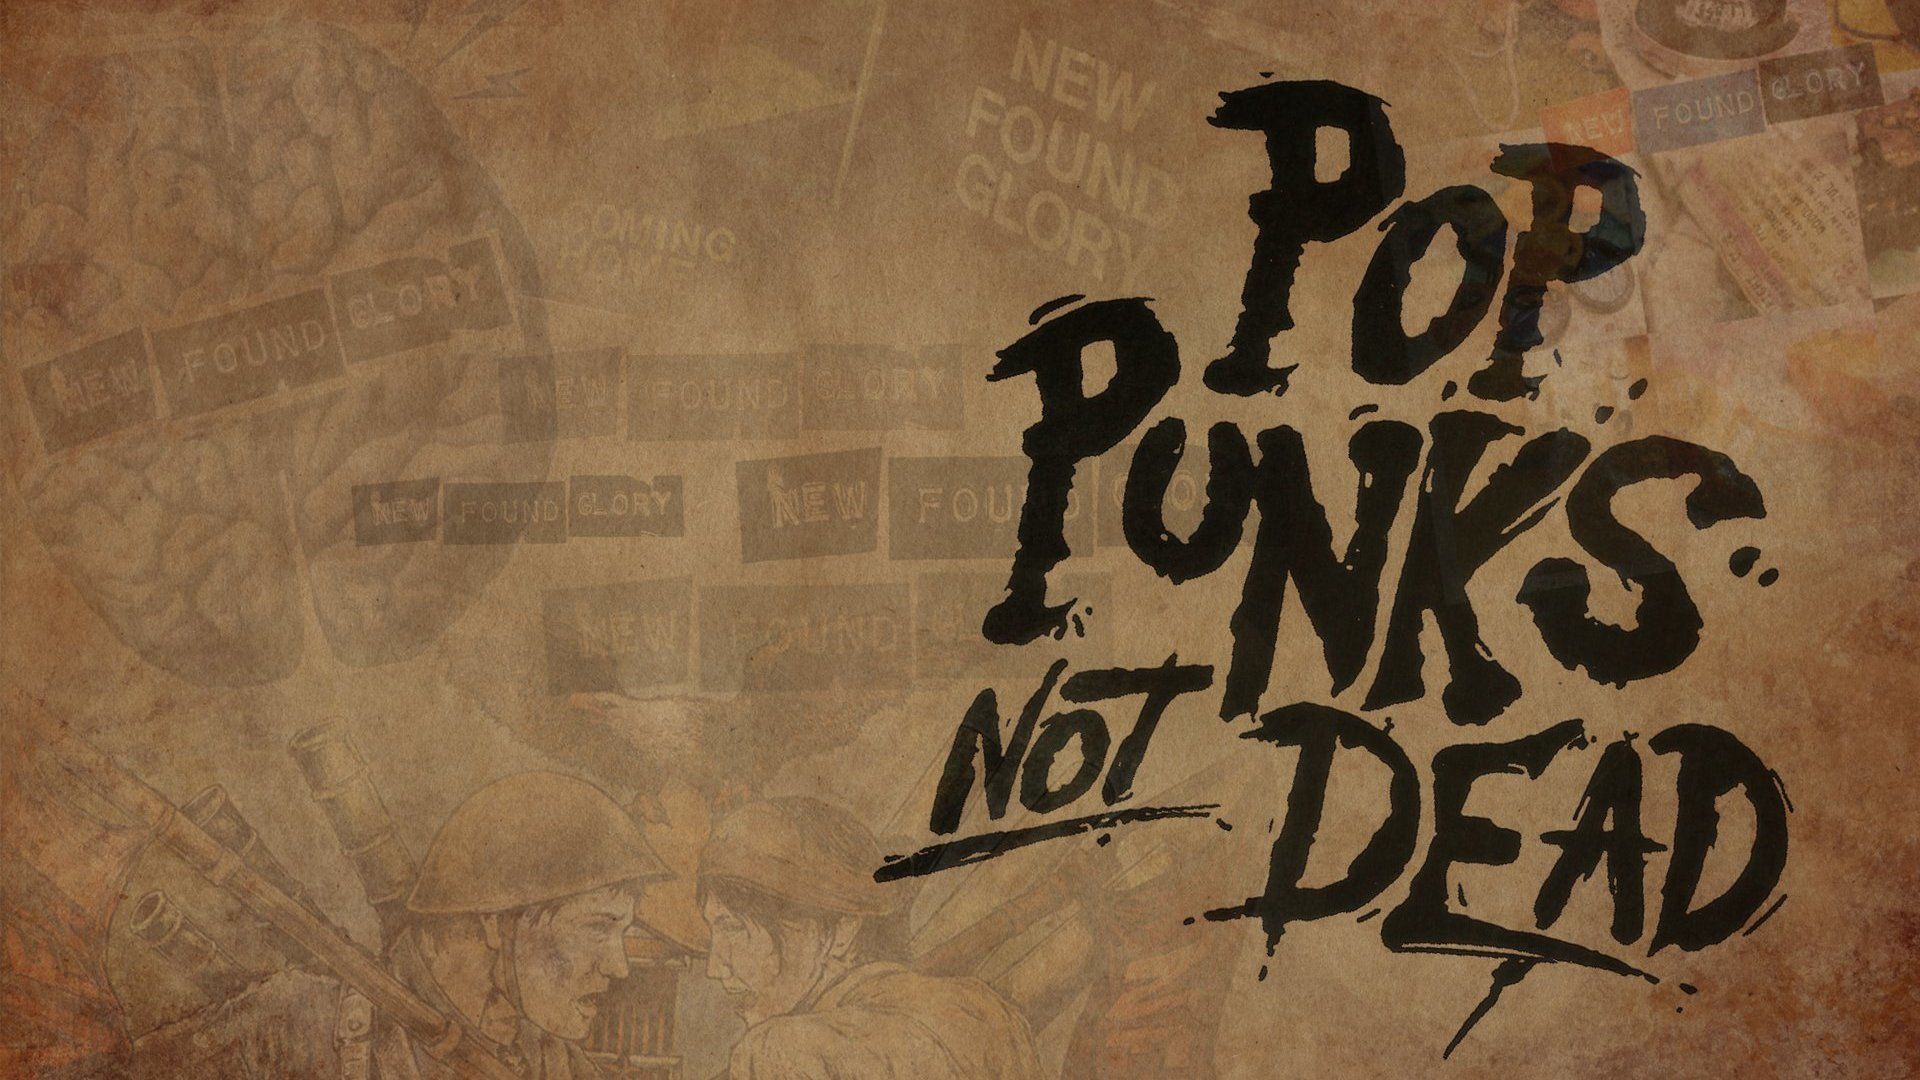 Pop Punks Not Dead